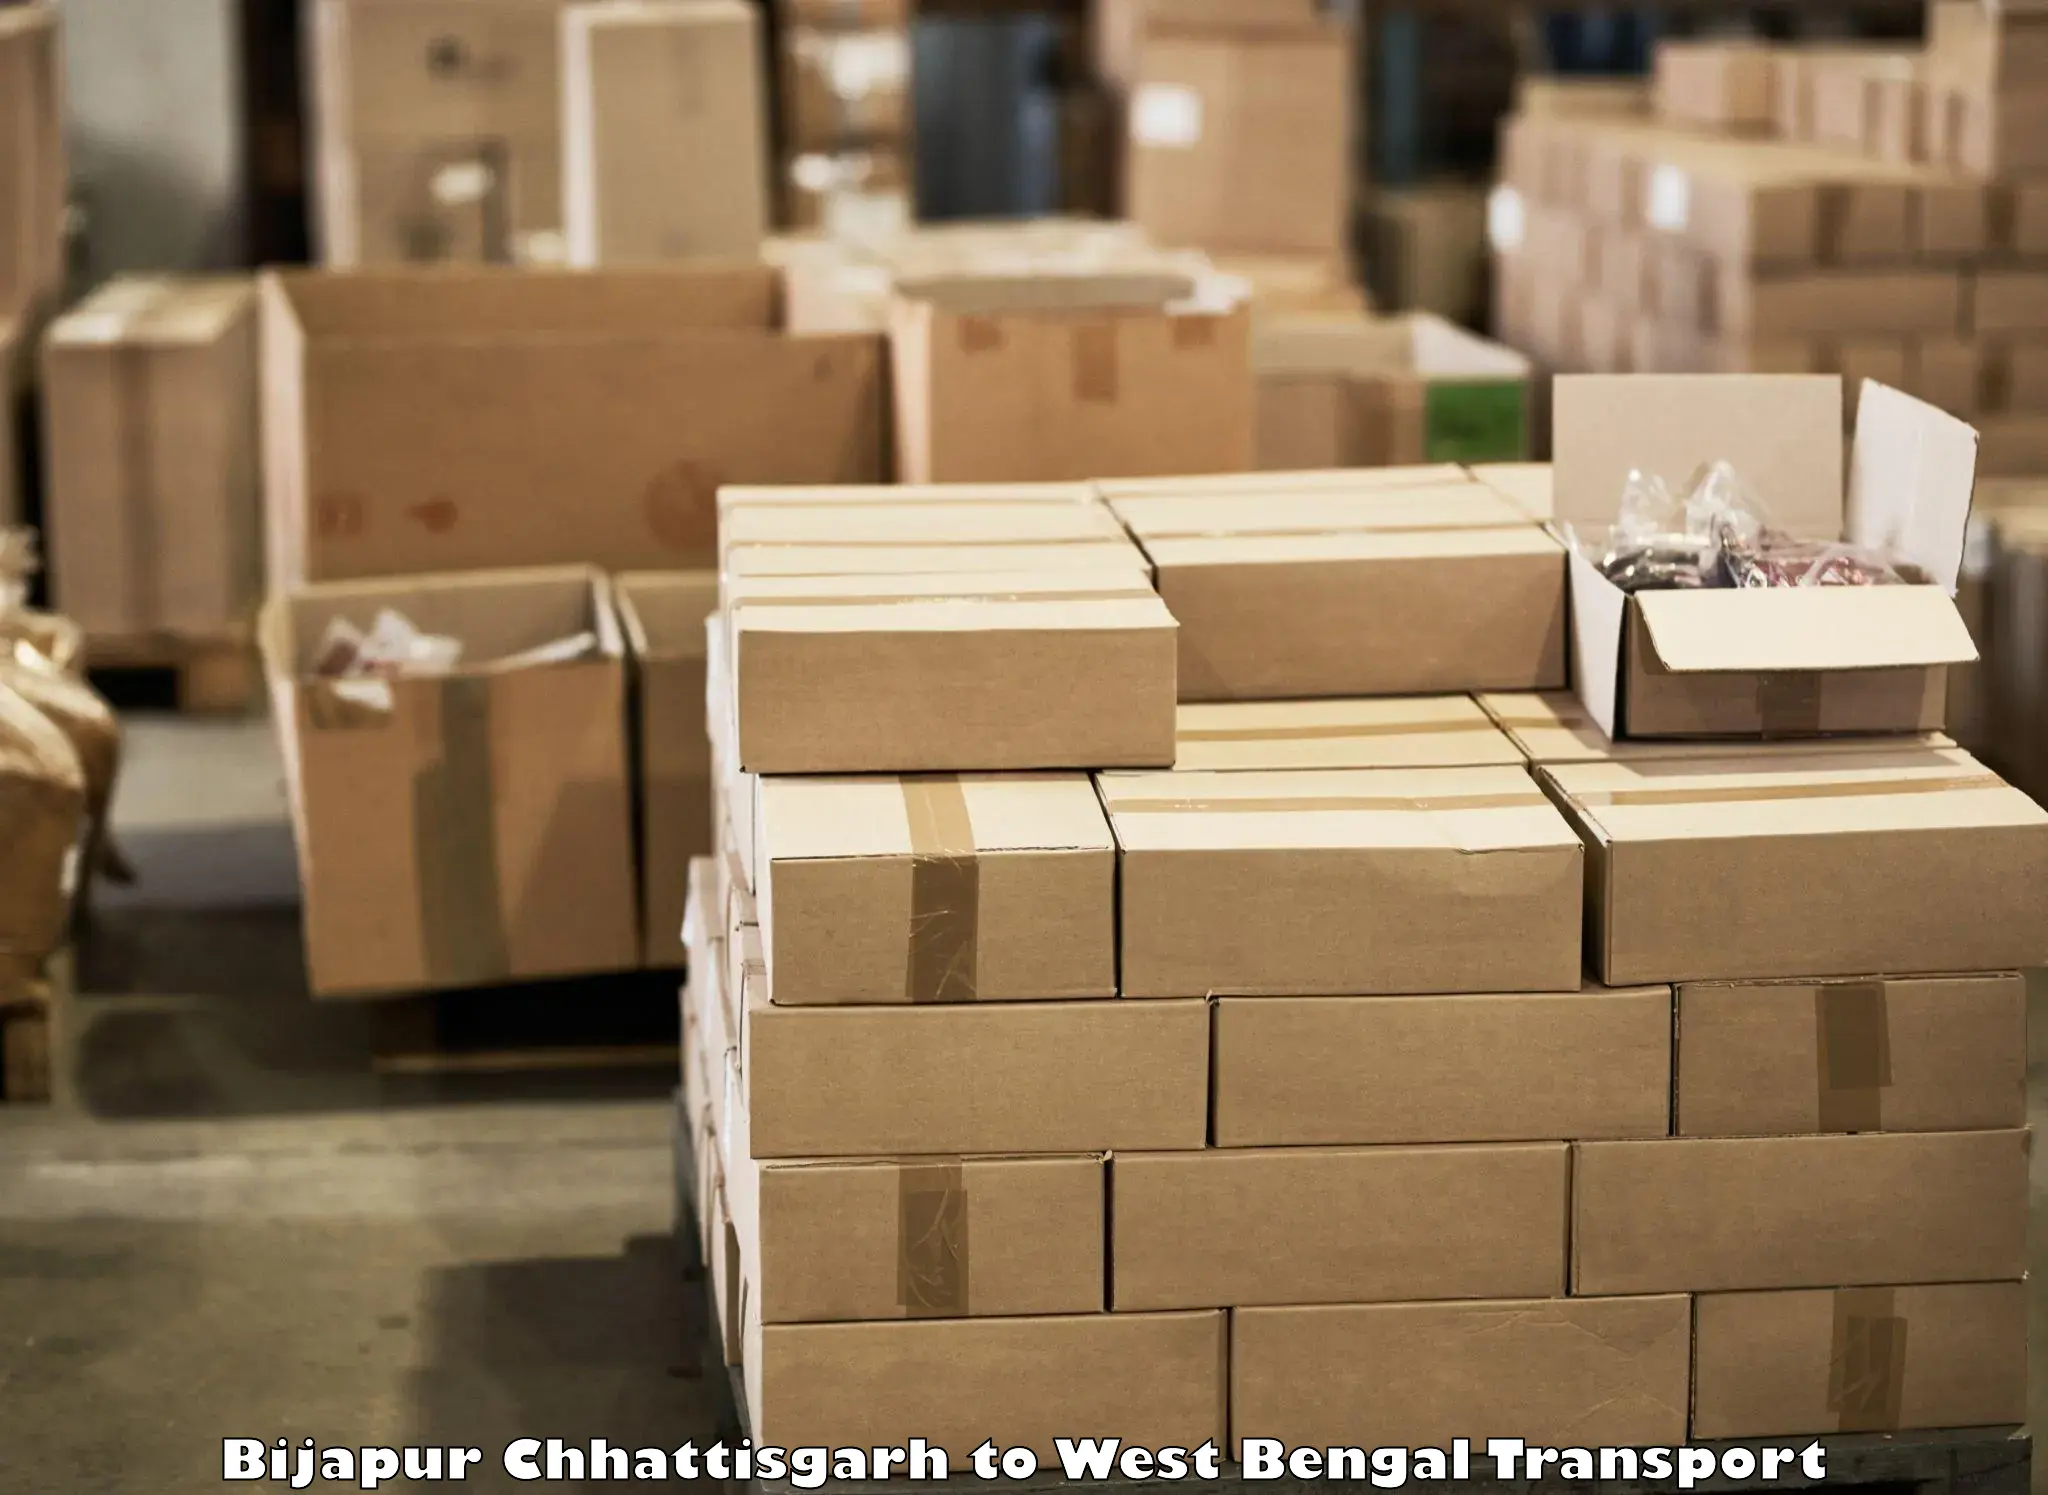 Online transport service Bijapur Chhattisgarh to Bara Bazar